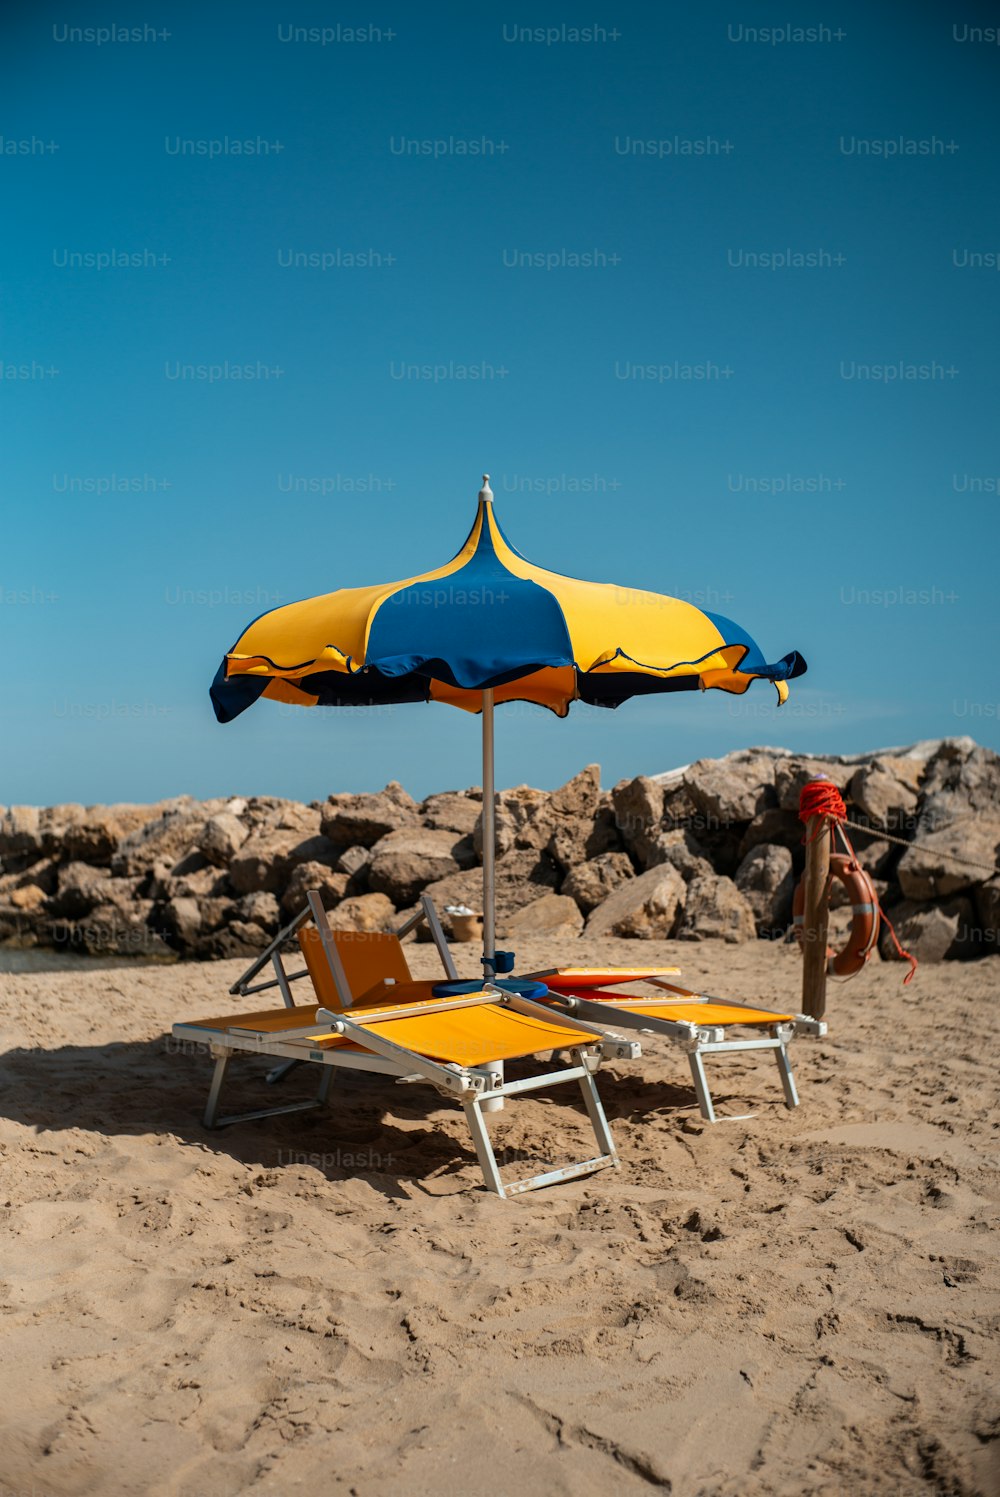 Una silla de playa amarilla y azul sentada encima de una playa de arena